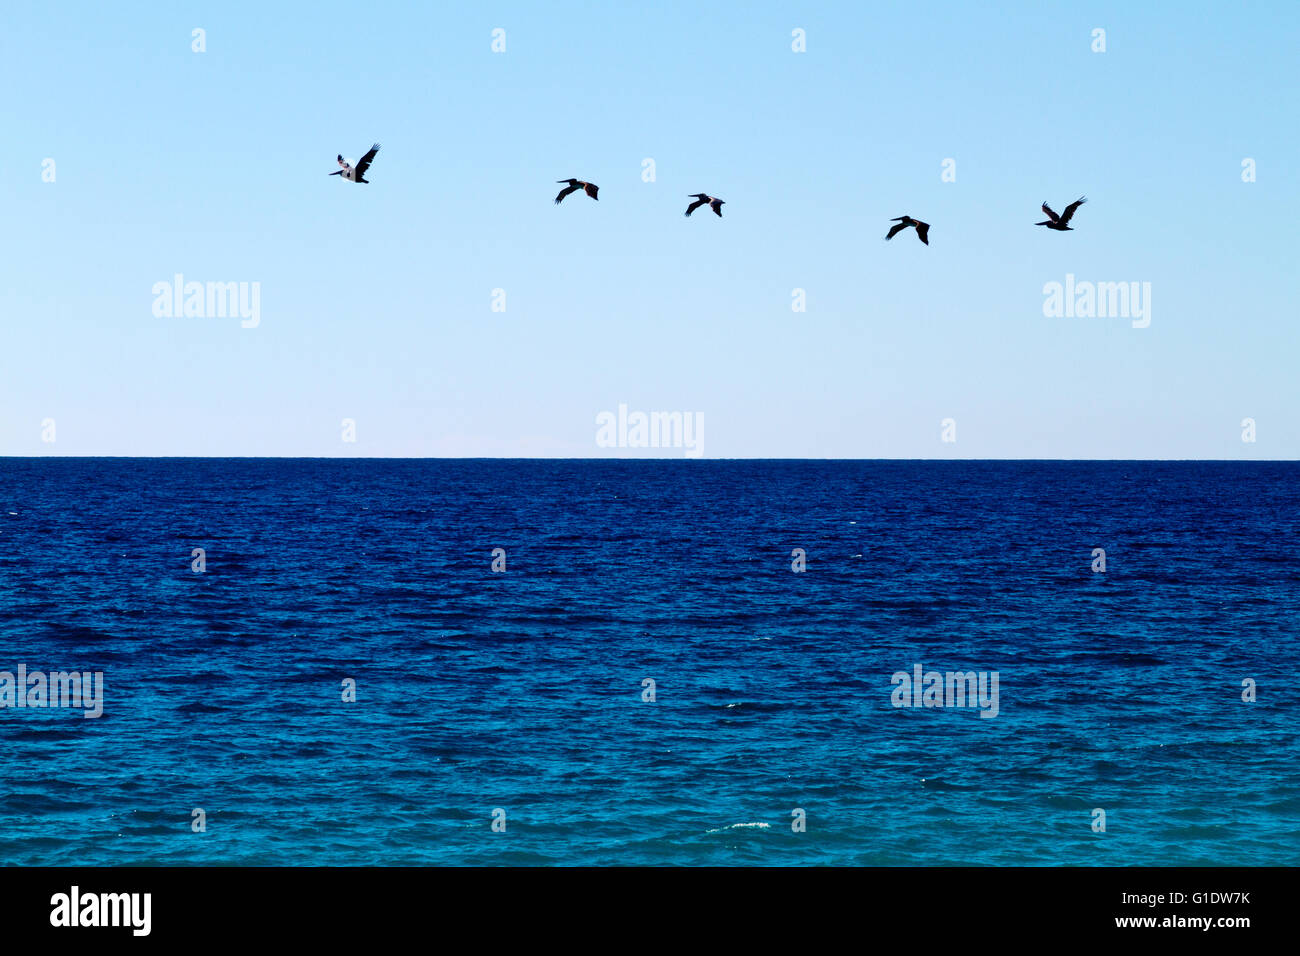 Pelikane fliegen in Formation über einen tiefblauen Ozean vor einem wolkenlosen blauen Himmel. Stockfoto